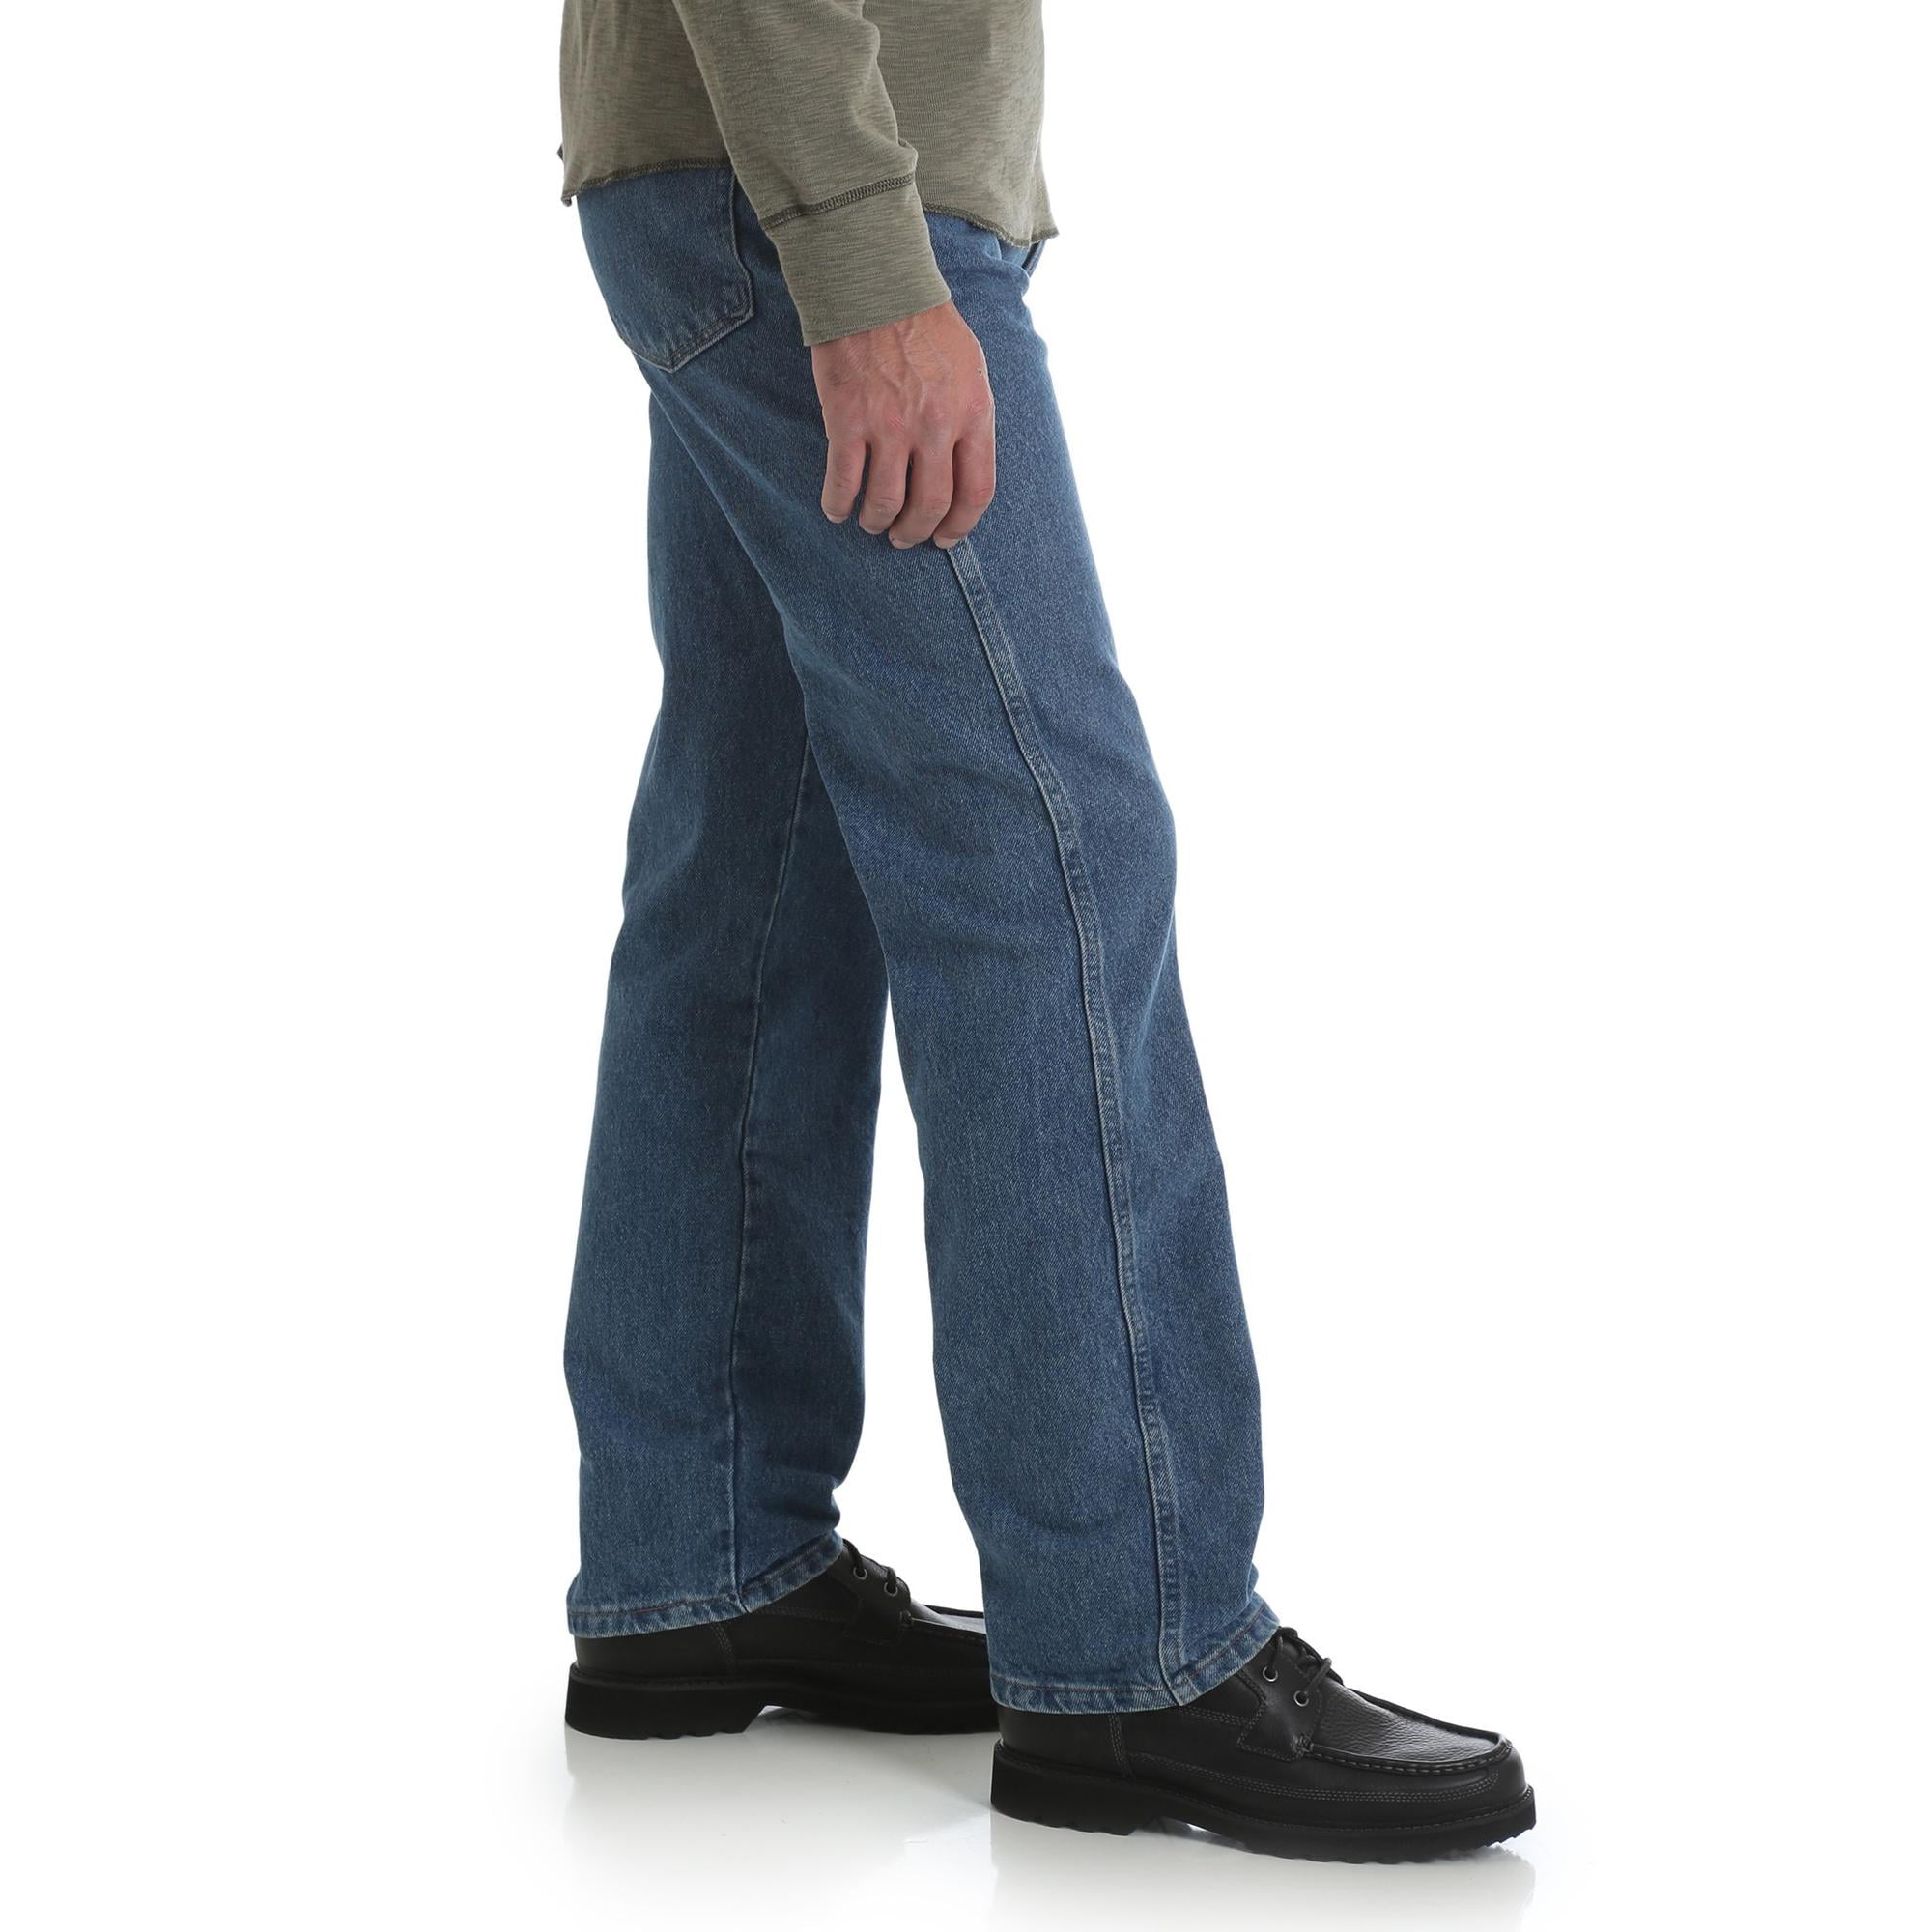 Big Star Jeans Inseam Chart